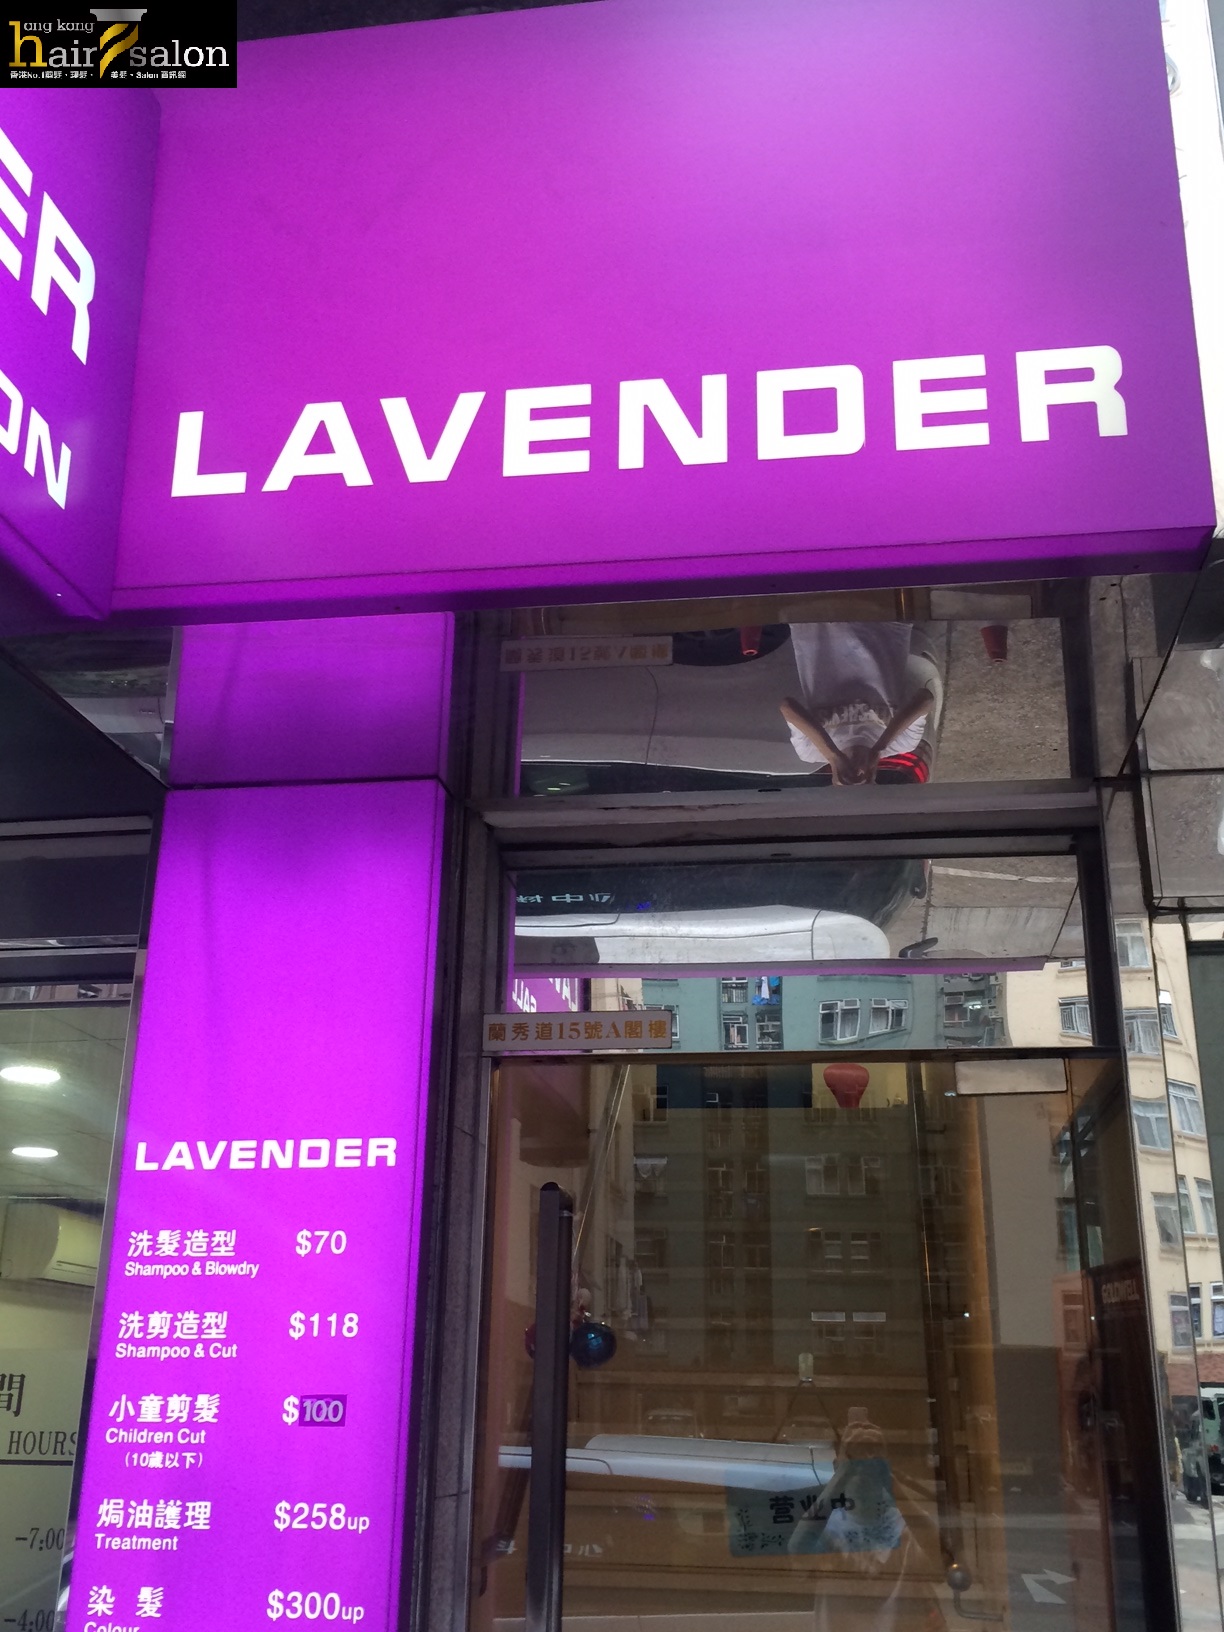 洗剪吹/洗吹造型: Lavender Salon